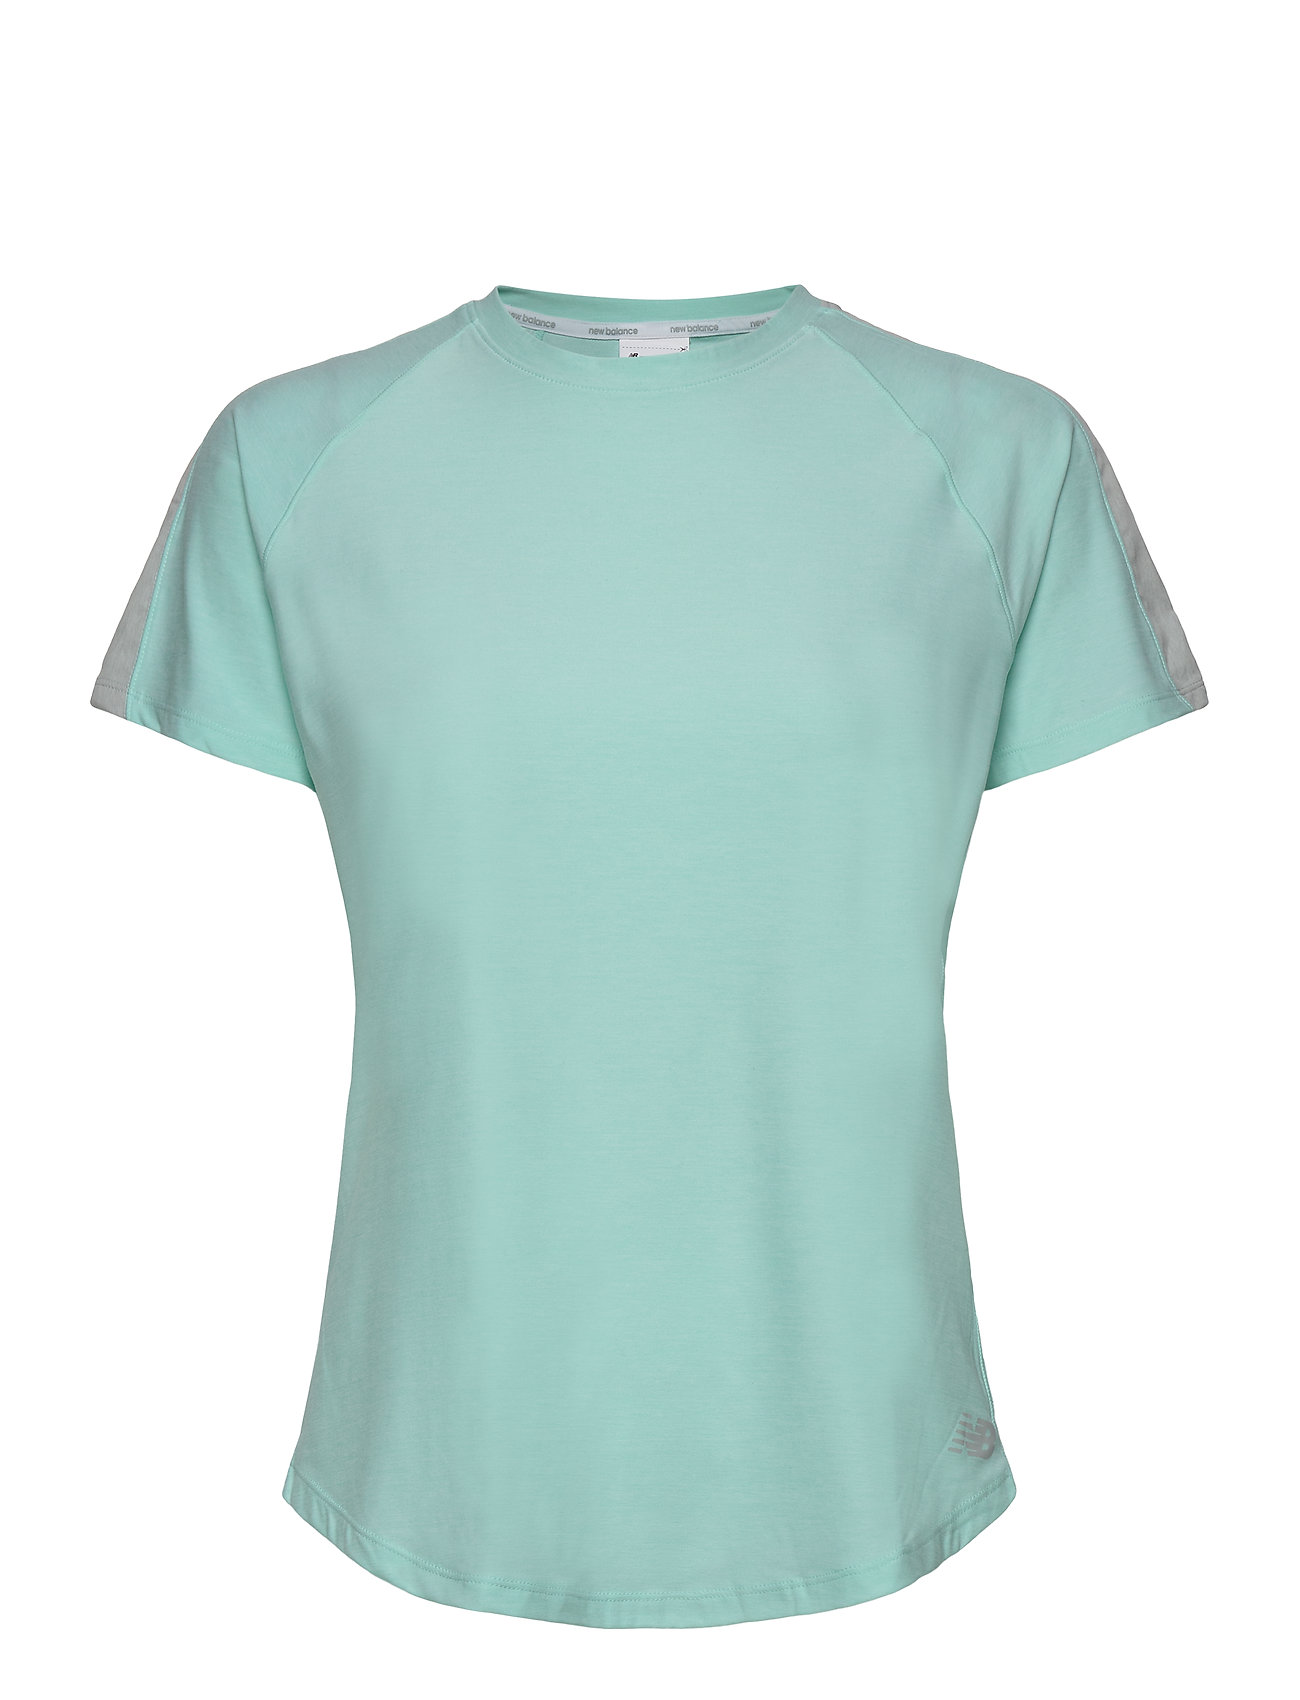 Sport Space Dye Tee T-shirts & Tops Short-sleeved Blå New Balance